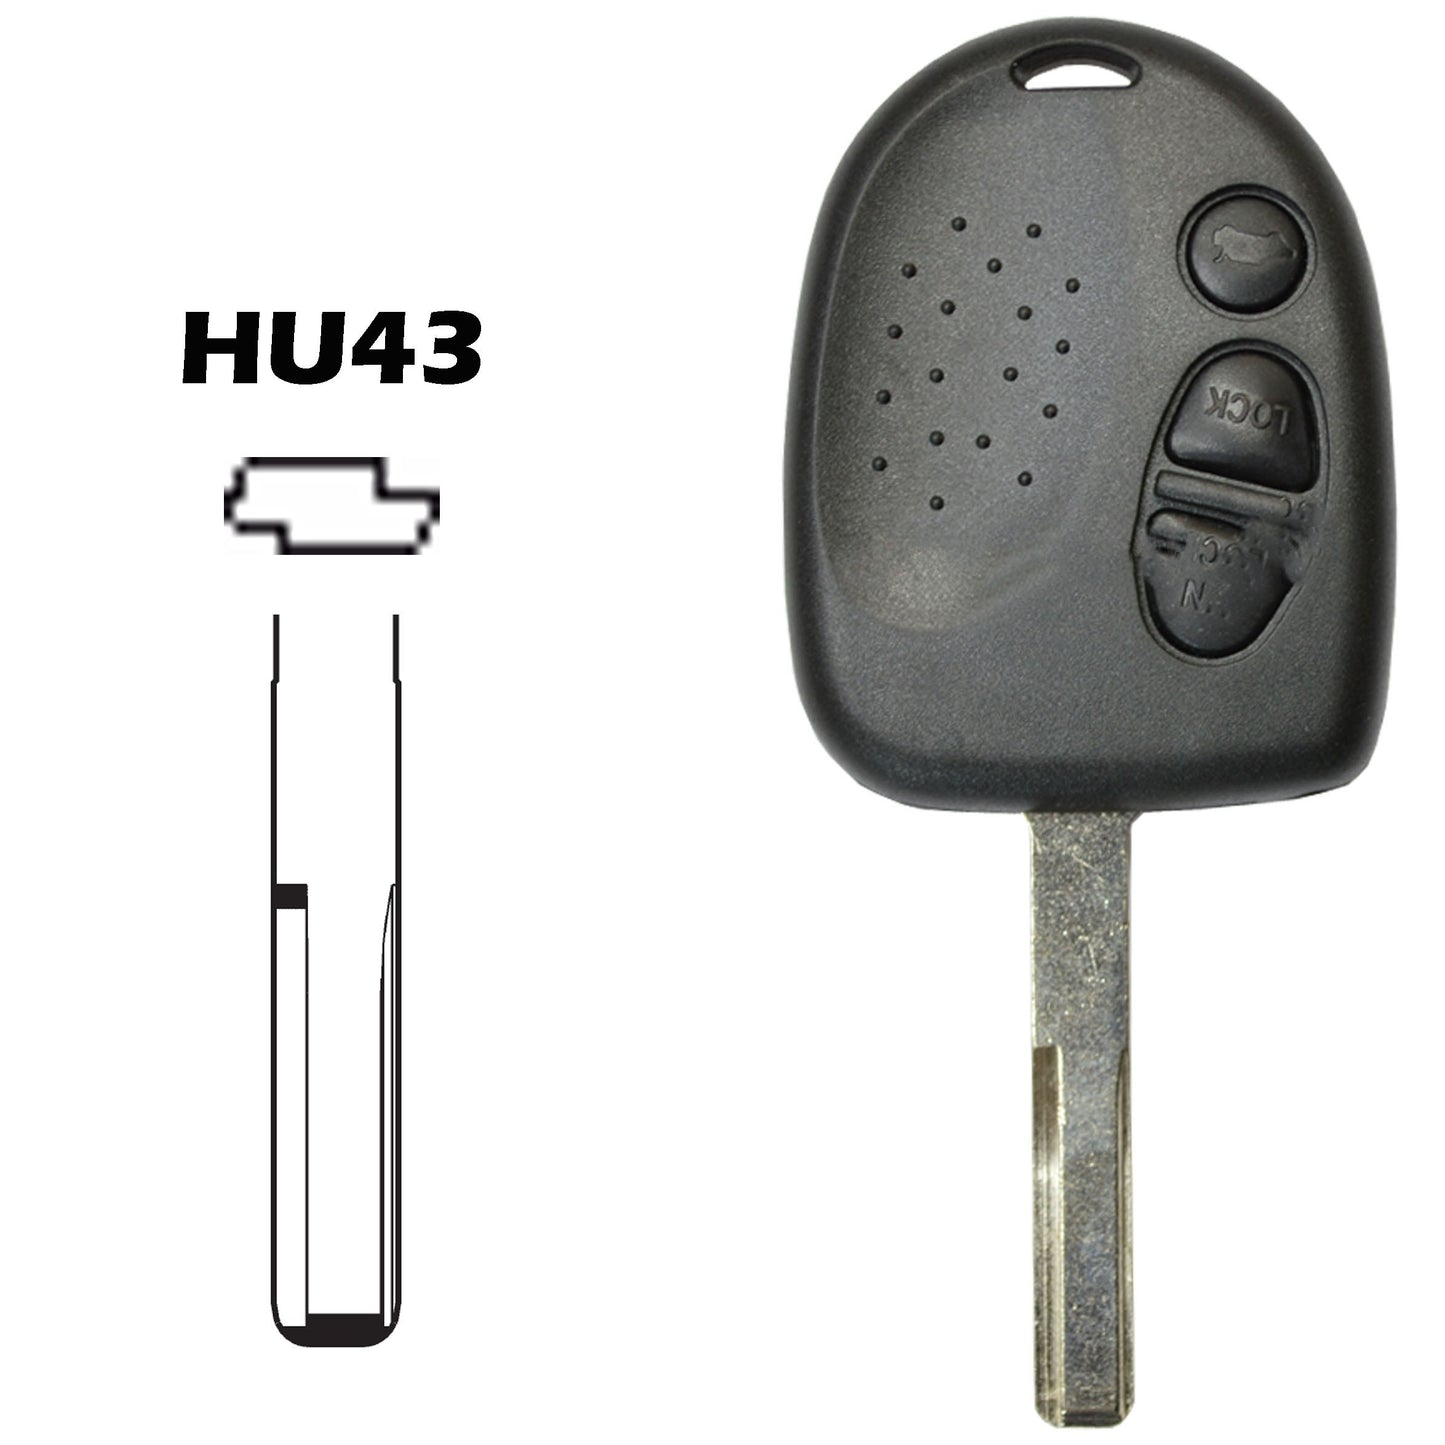 Caixa comando 3 botões chave HU43 Chevrolet Opel